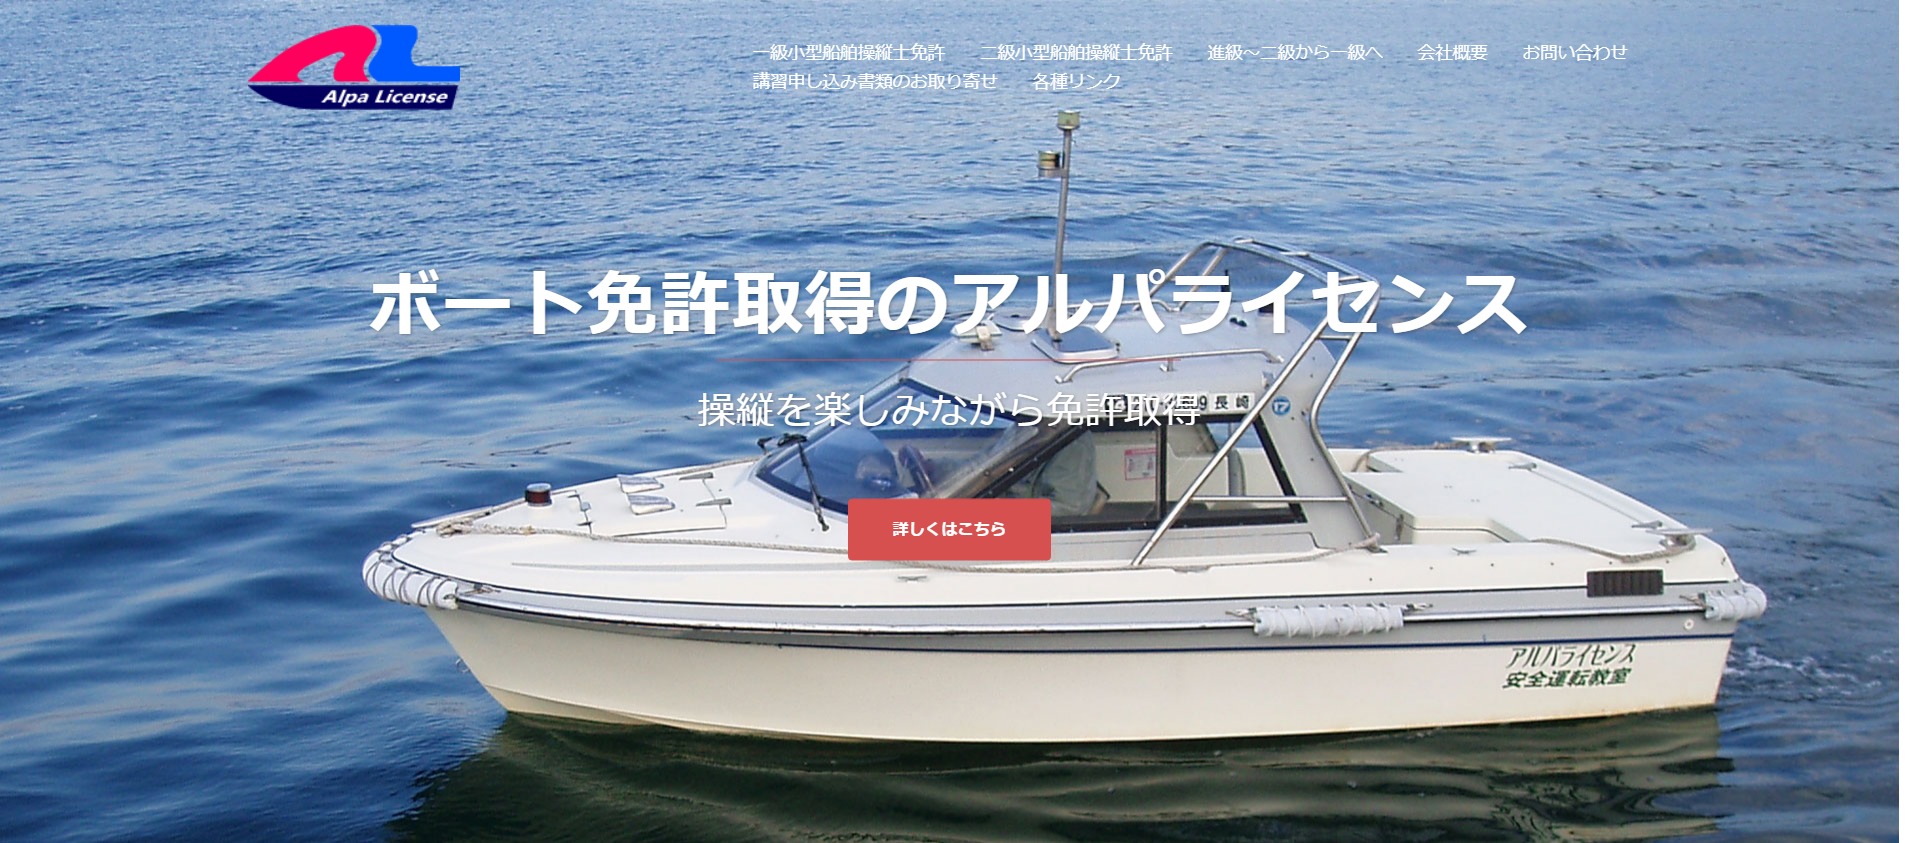 長崎県 アルパライセンスで小型船舶免許を取得